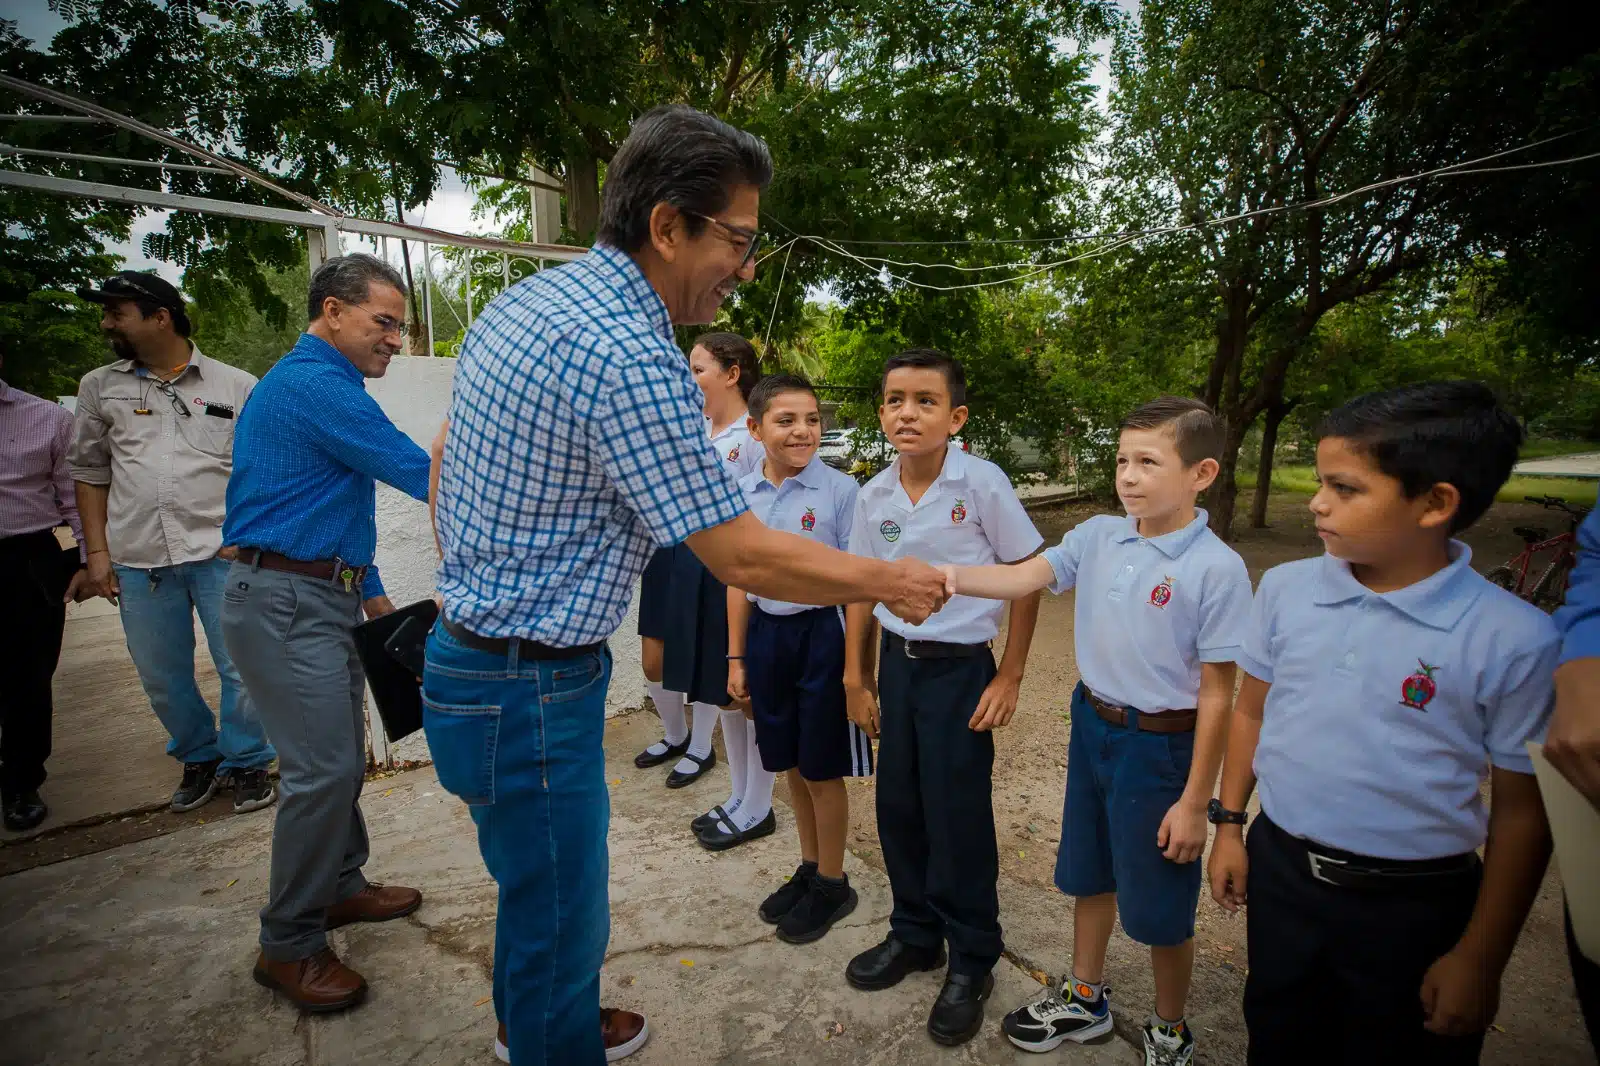 el alcalde Martín Ahumada Quintero afirmó que seguirán colaborando con el sector educativo para que los alumnos no sufran calor debajo de una techumbre o los árboles.